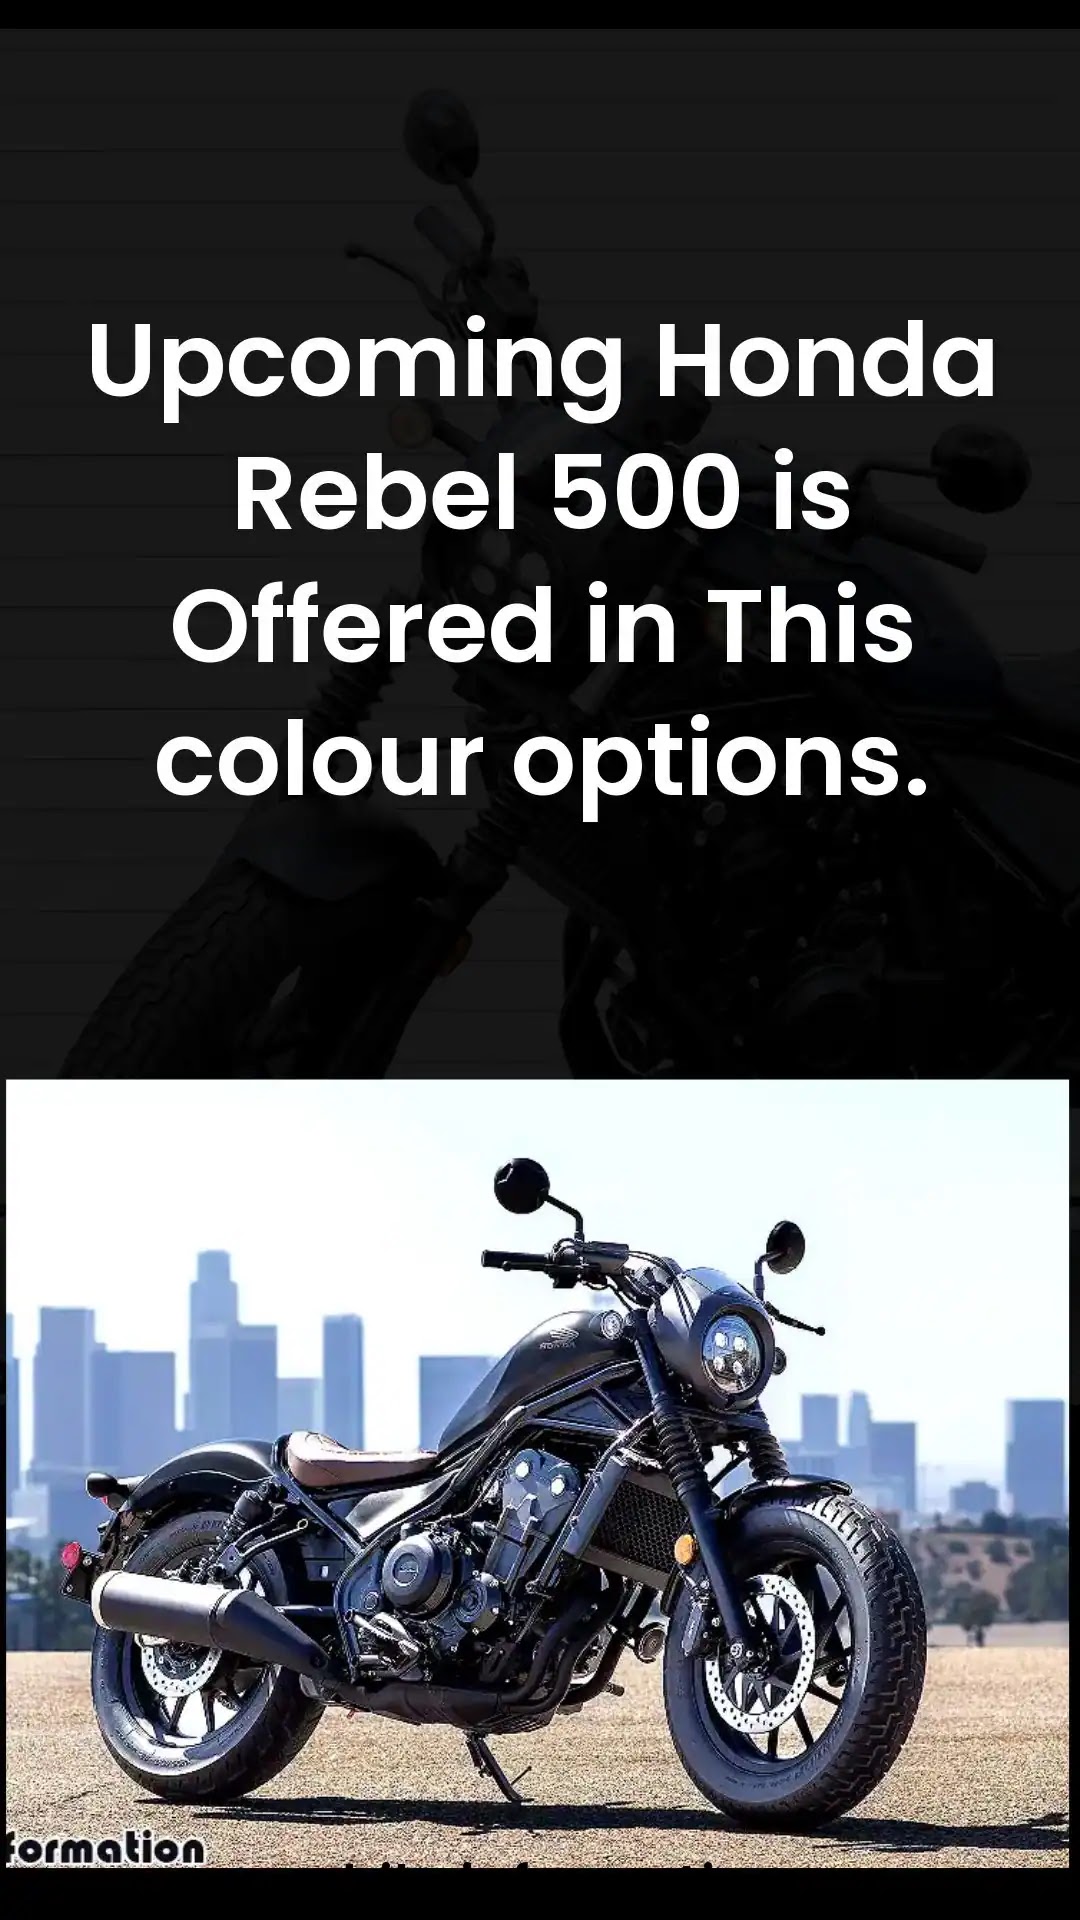 Honda Rebel 500